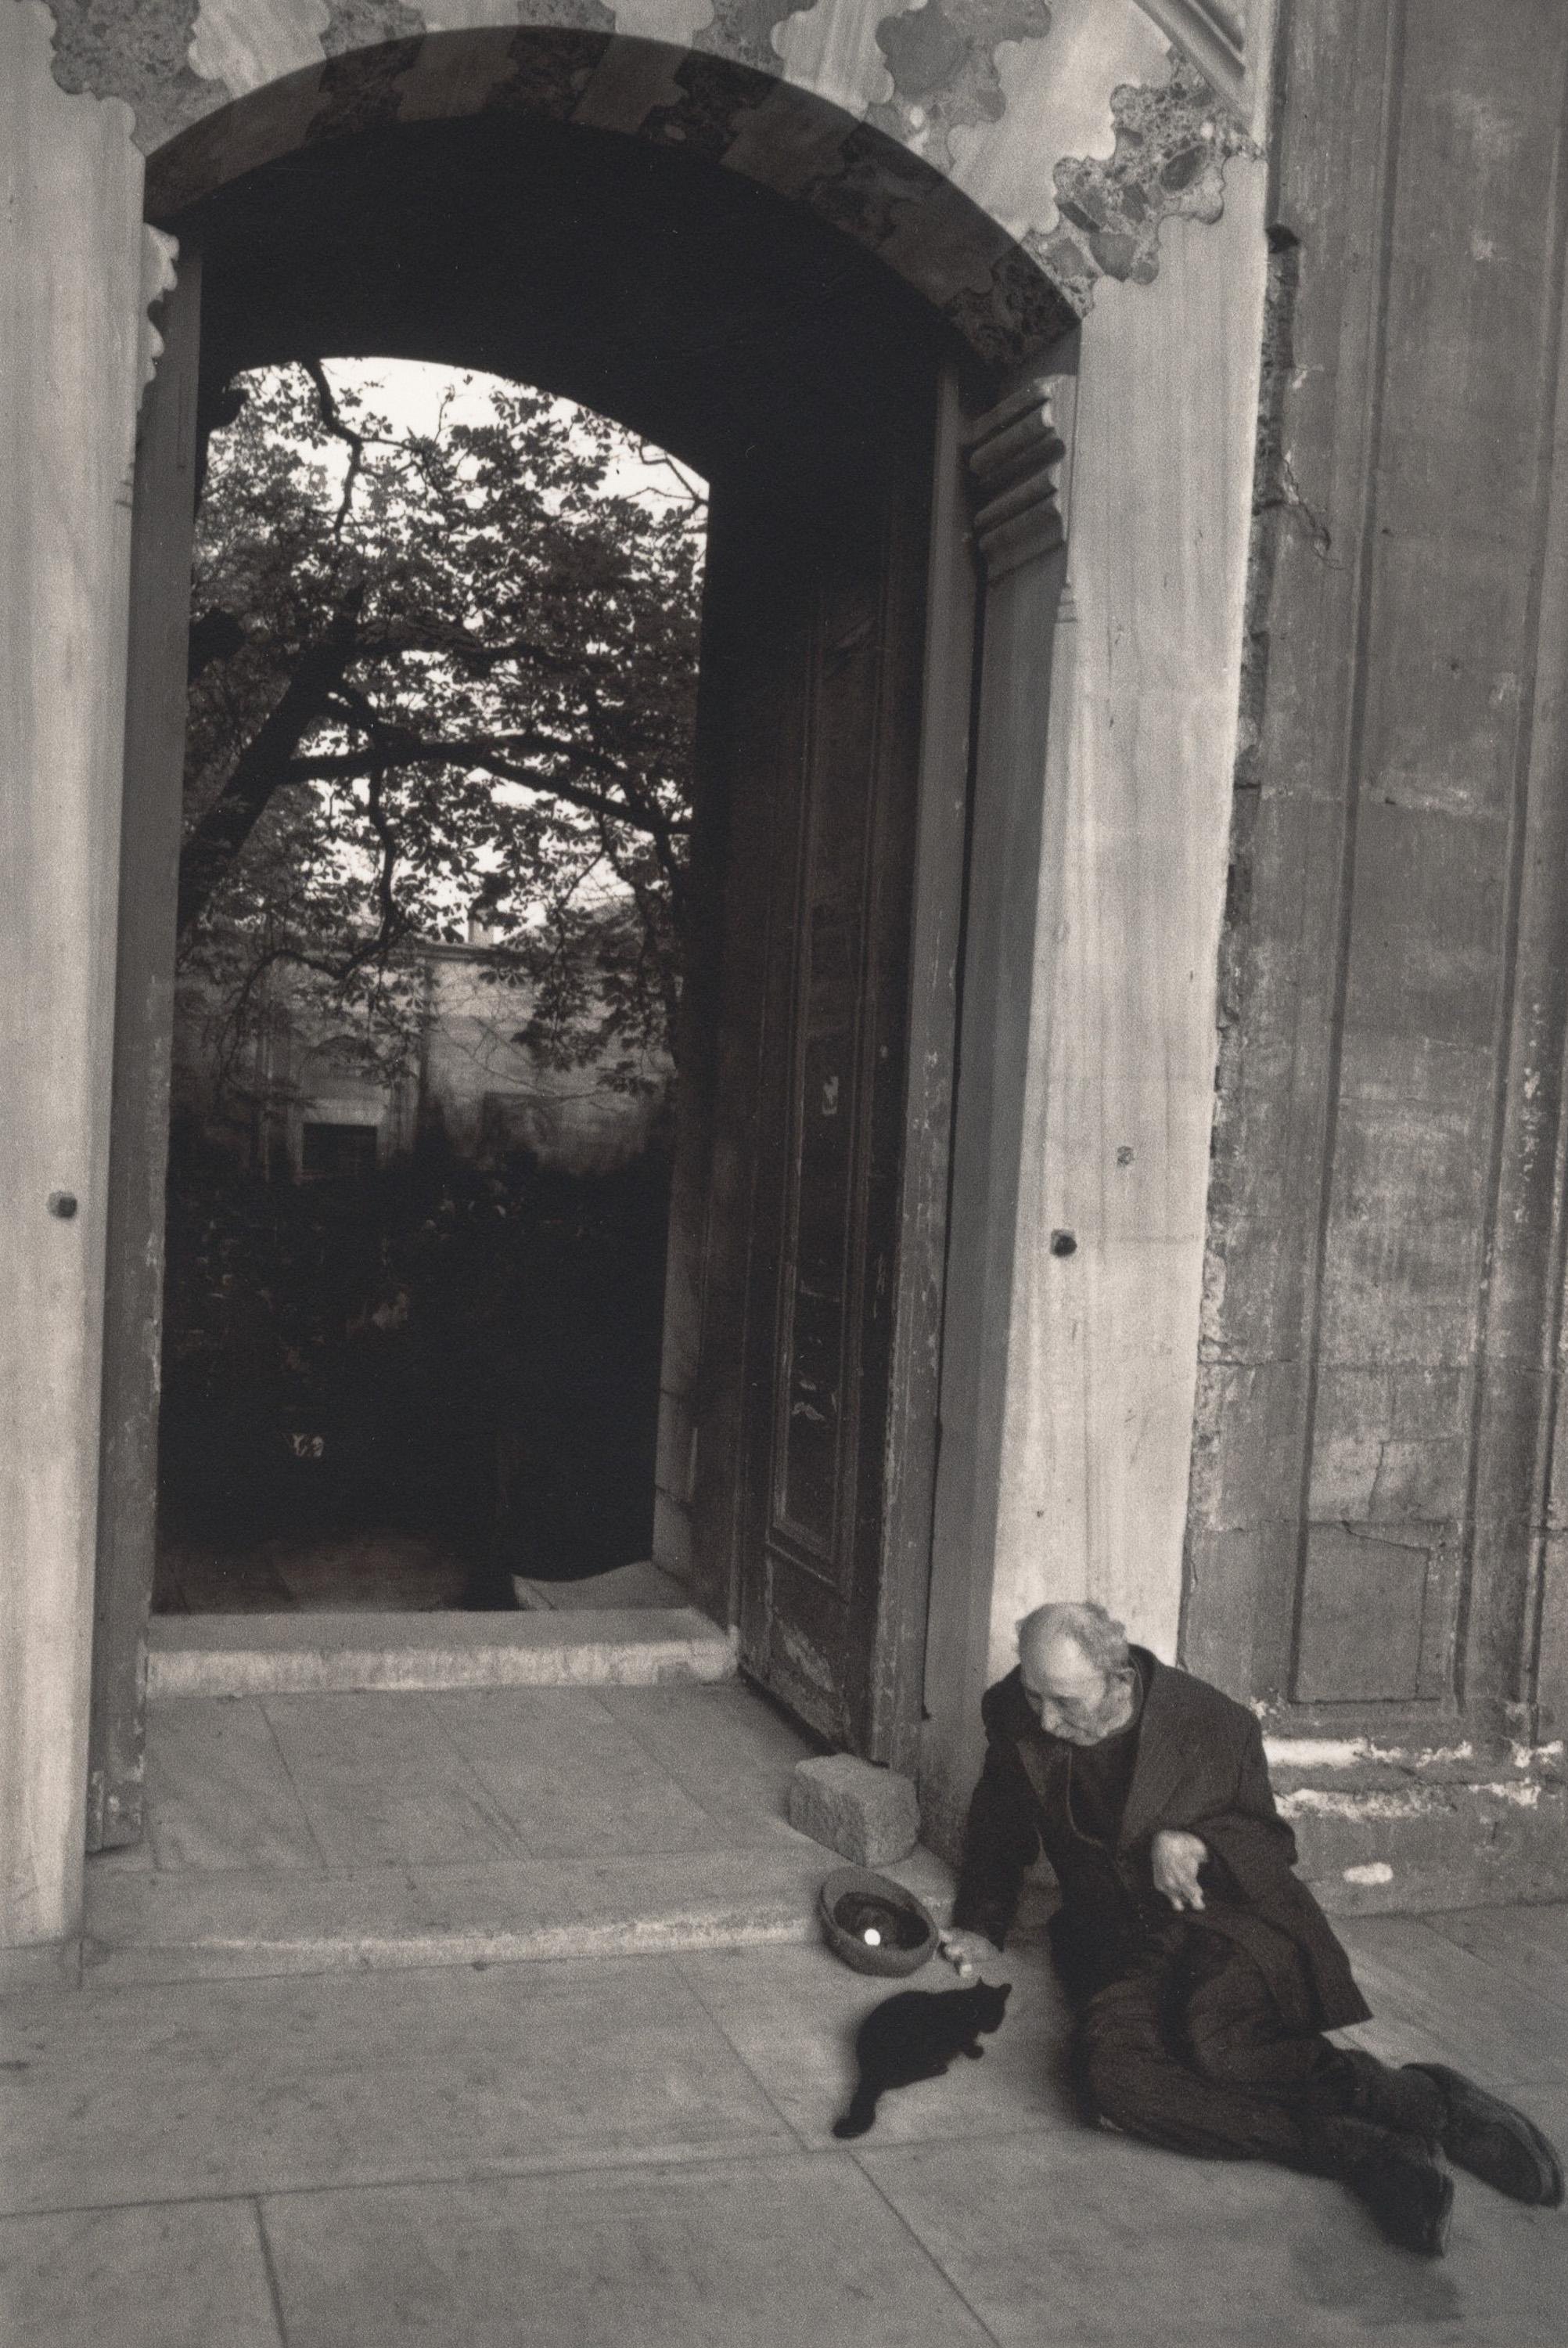 Pentti Sammallahti Landscape Photograph – Istanbul, Türkei (Mann in der Nähe des Eingangsbereichs, eine Katze füttert)